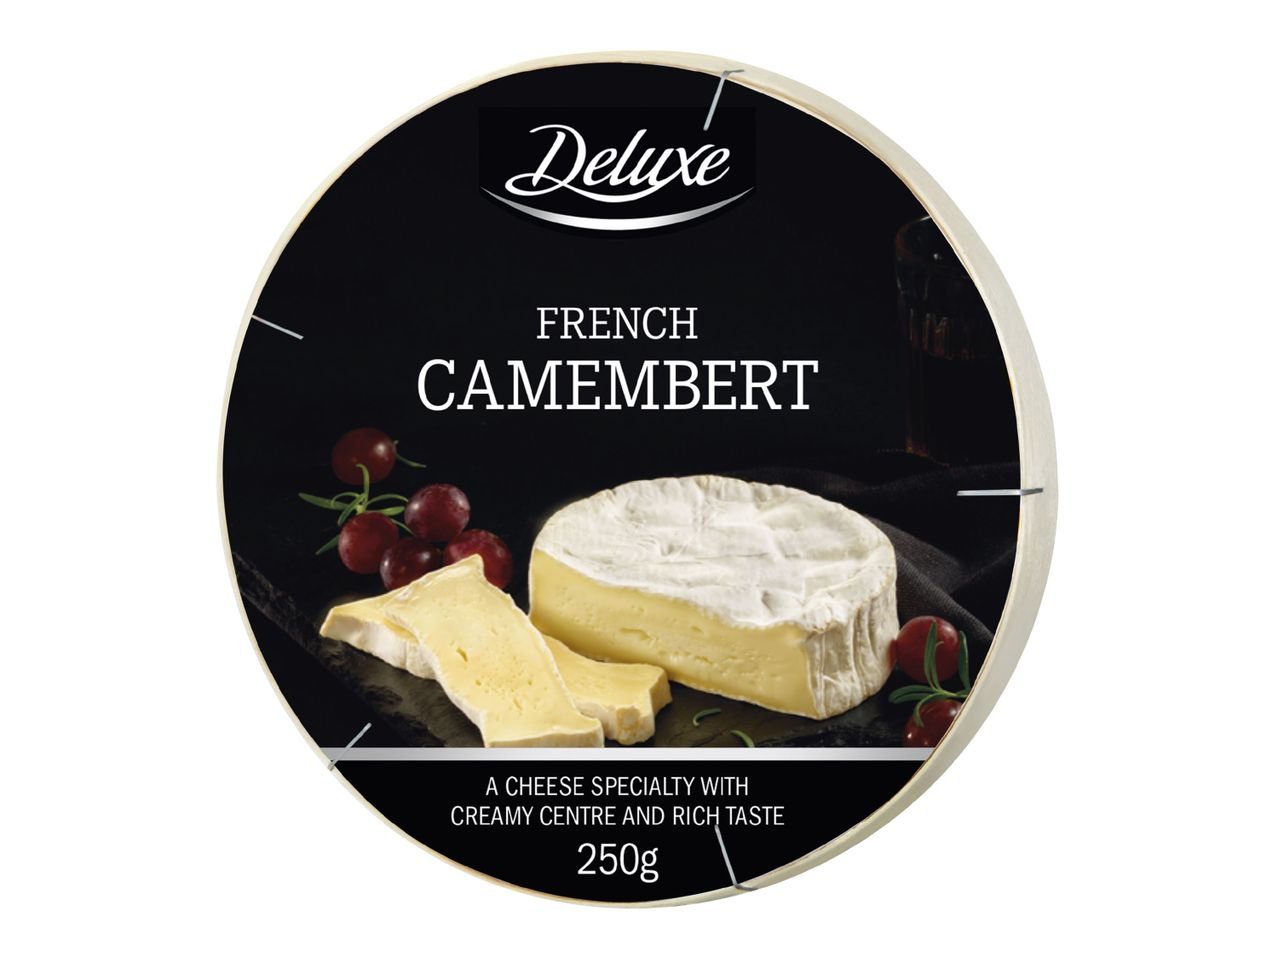 Mene koko näytön tilaan: Deluxe Camembert-juusto - Kuva 1